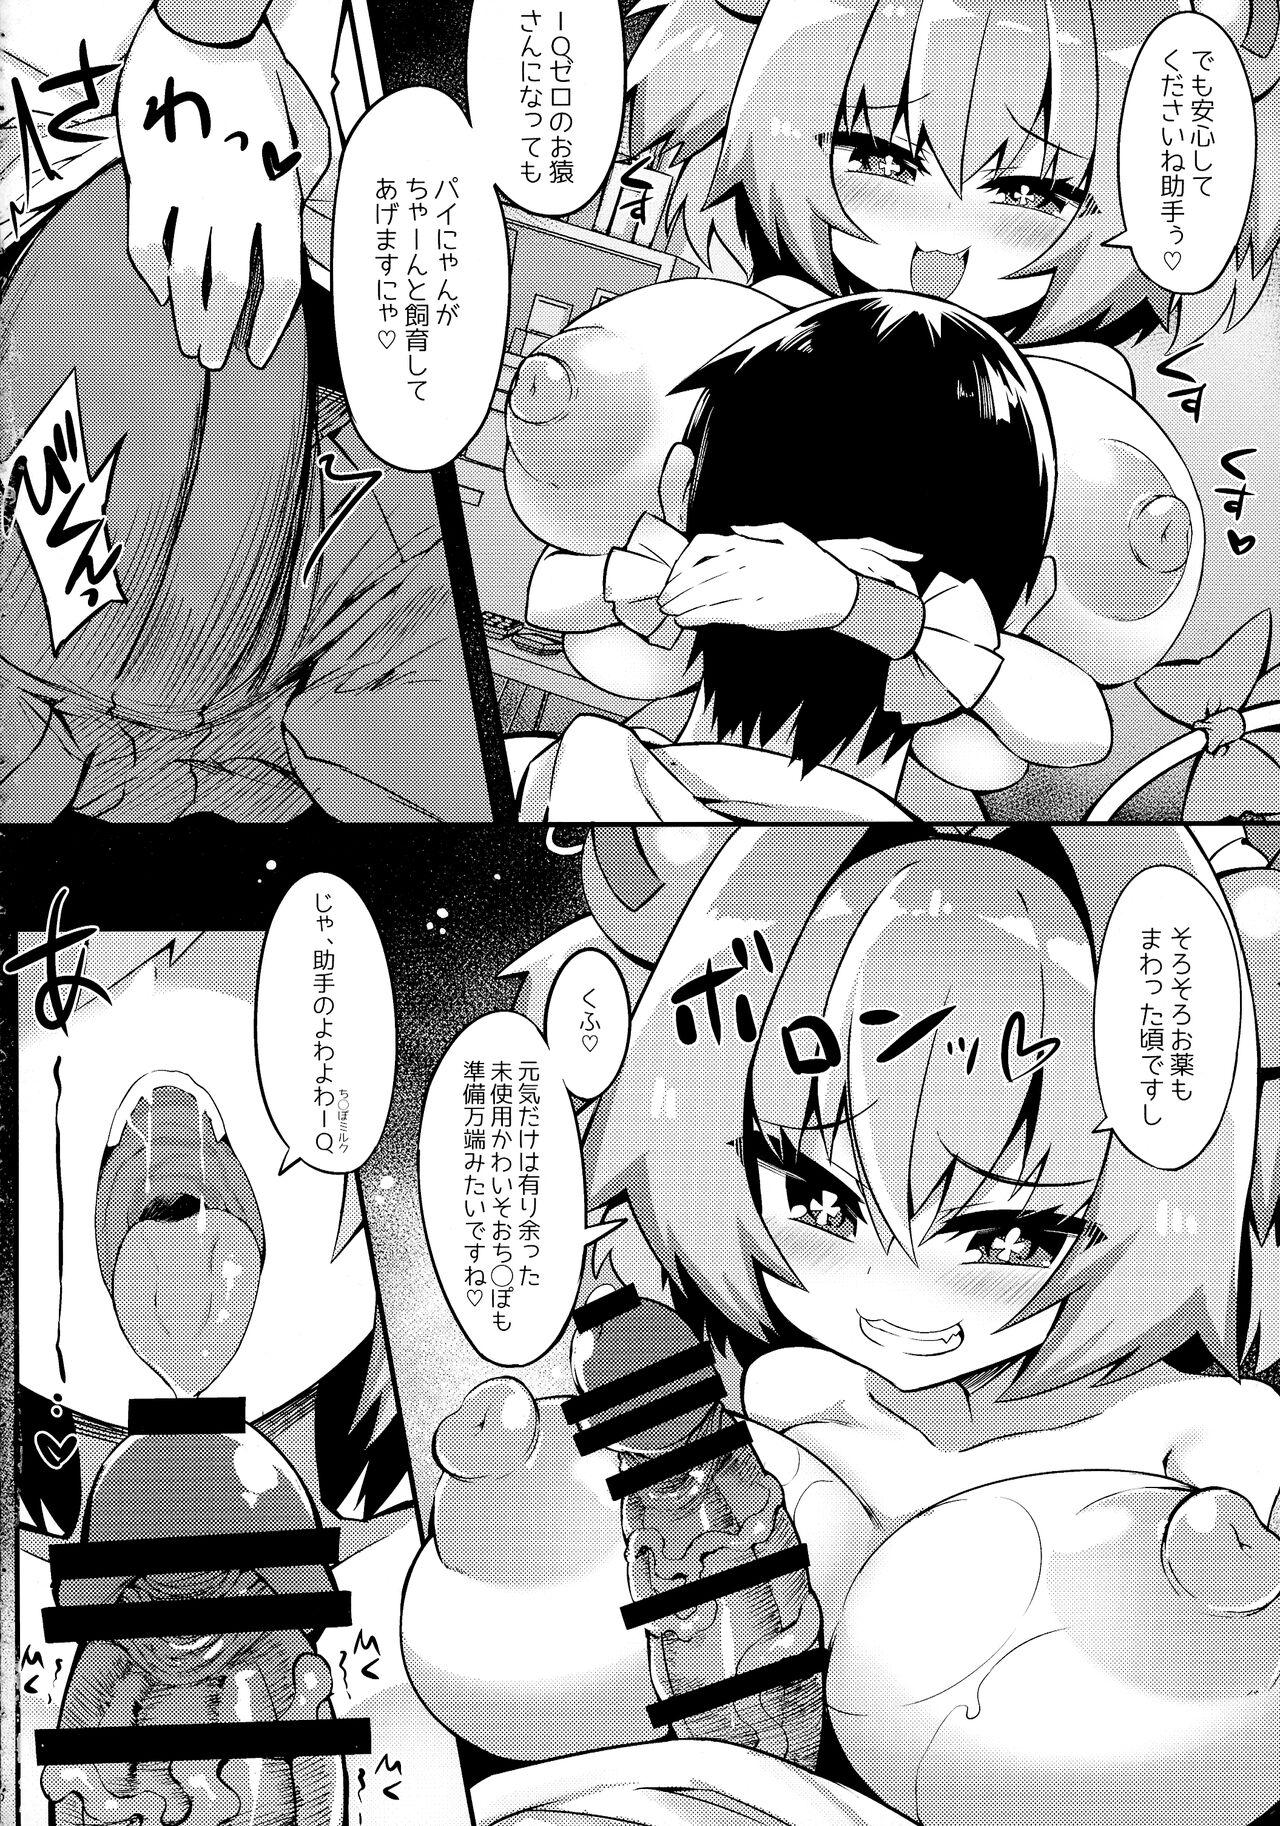 Jerk Paigaki no IQ ga 0 ni Naru made Milk o Shiboritoru Hon - Bomber girl Shot - Page 8